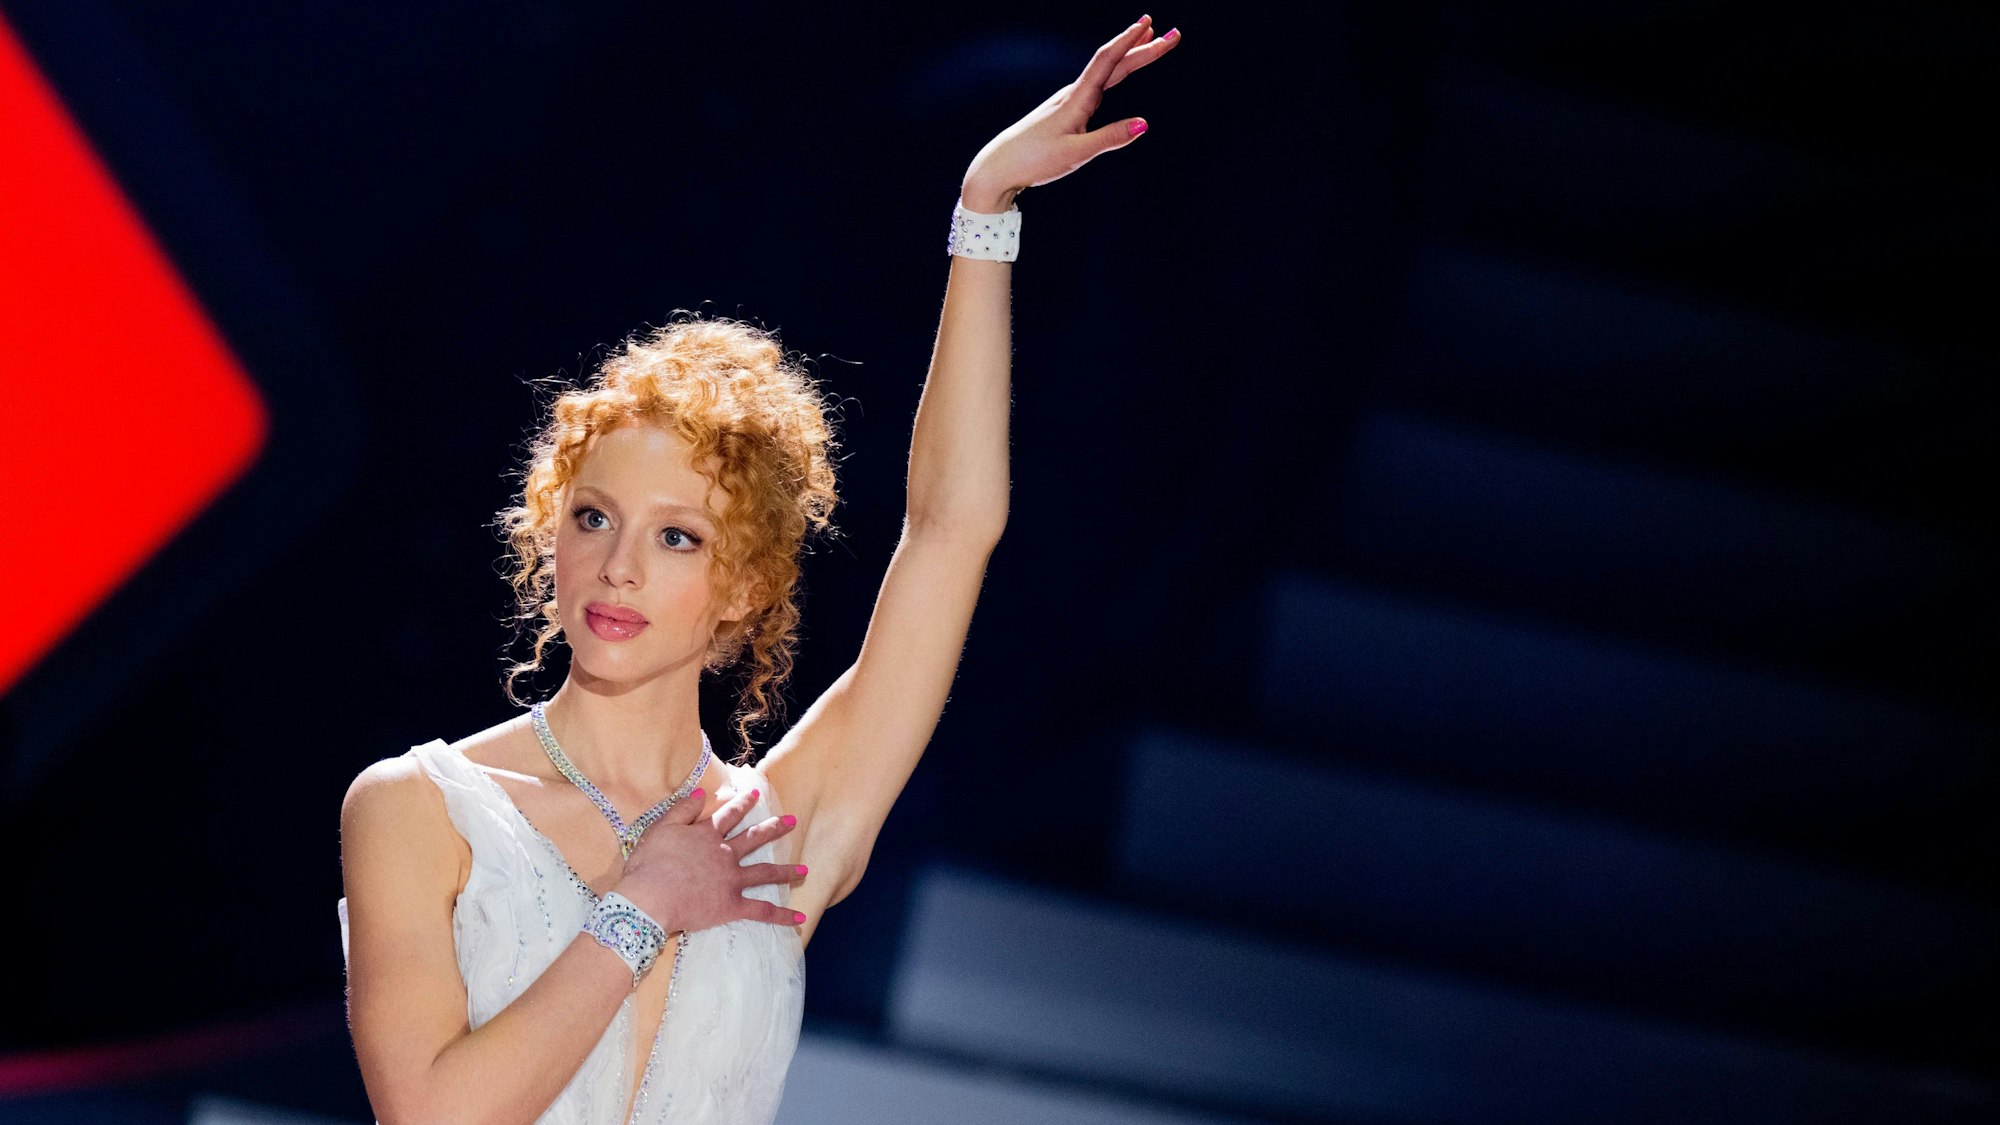 Anna Ermakova, Model, tanzt bei der Kennenlernshow zu Beginn der 16. Staffel der RTL-Tanzshow "Let's Dance" im Coloneum.